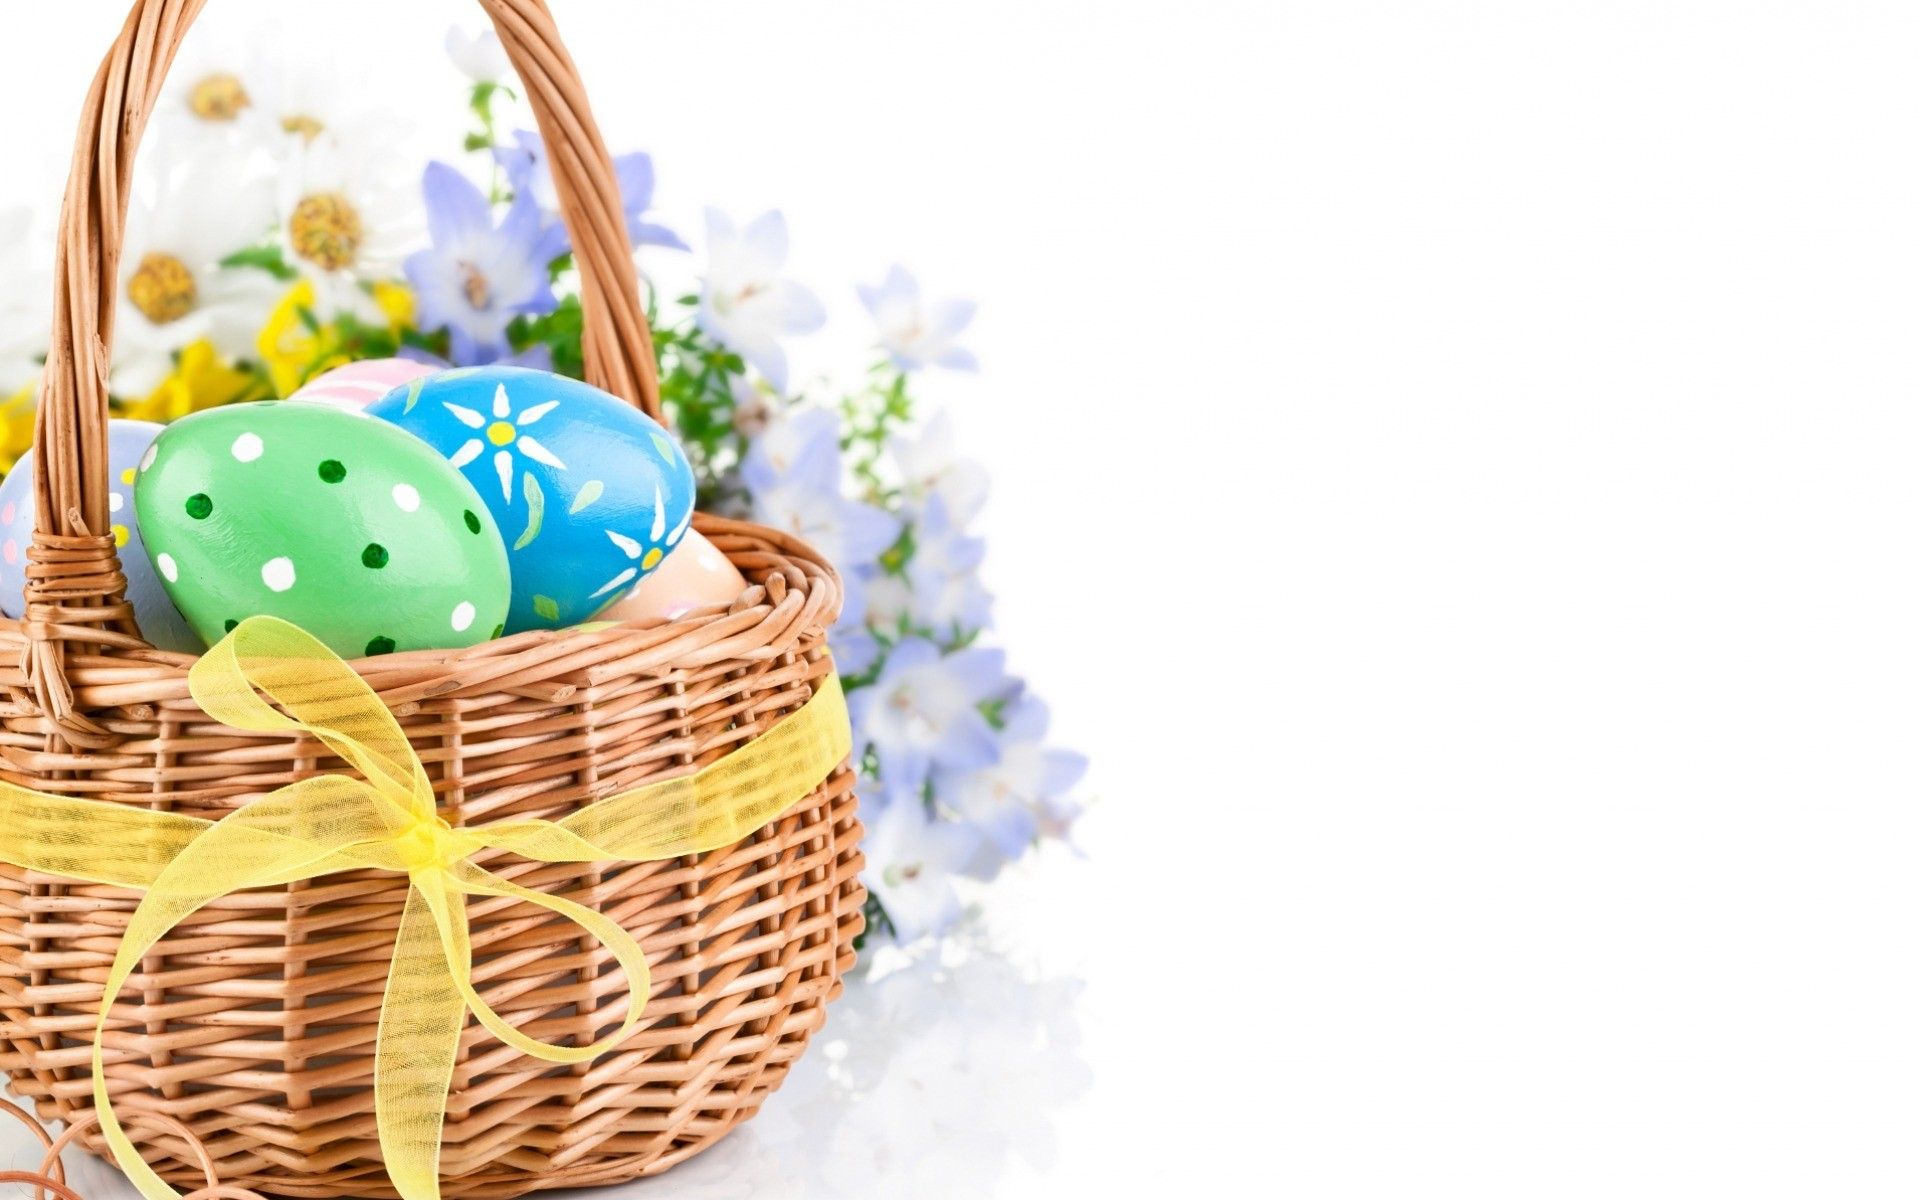 Easter Baskets Wallpaper. Easter Wallpaper, Happy Easter Wallpaper and Easter Holiday Wallpaper